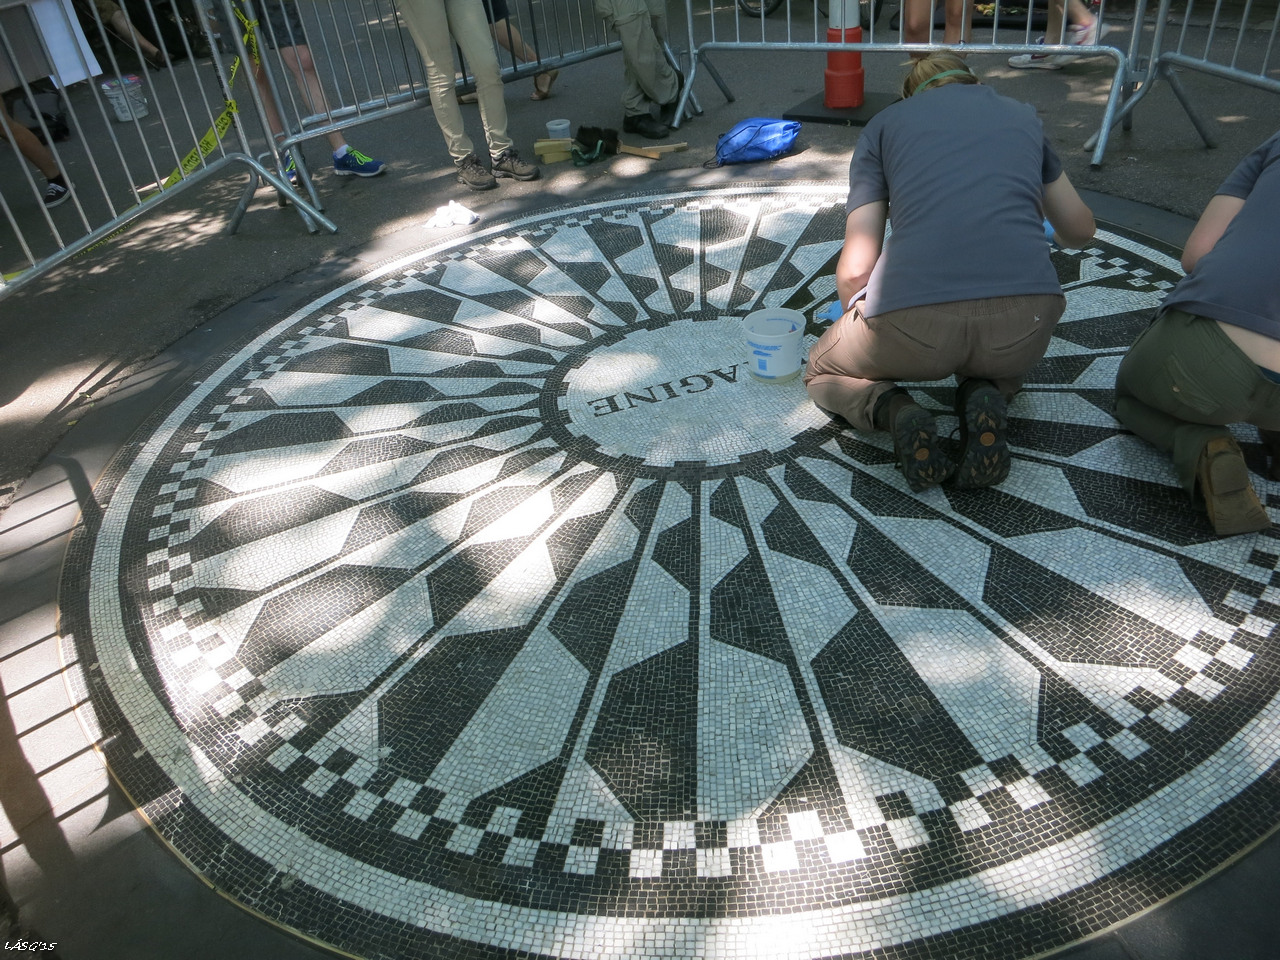 A John Lennon emlékhelyet éppen felújították, ez azonban nem zavarta meg a rajongókat az odaadásban.